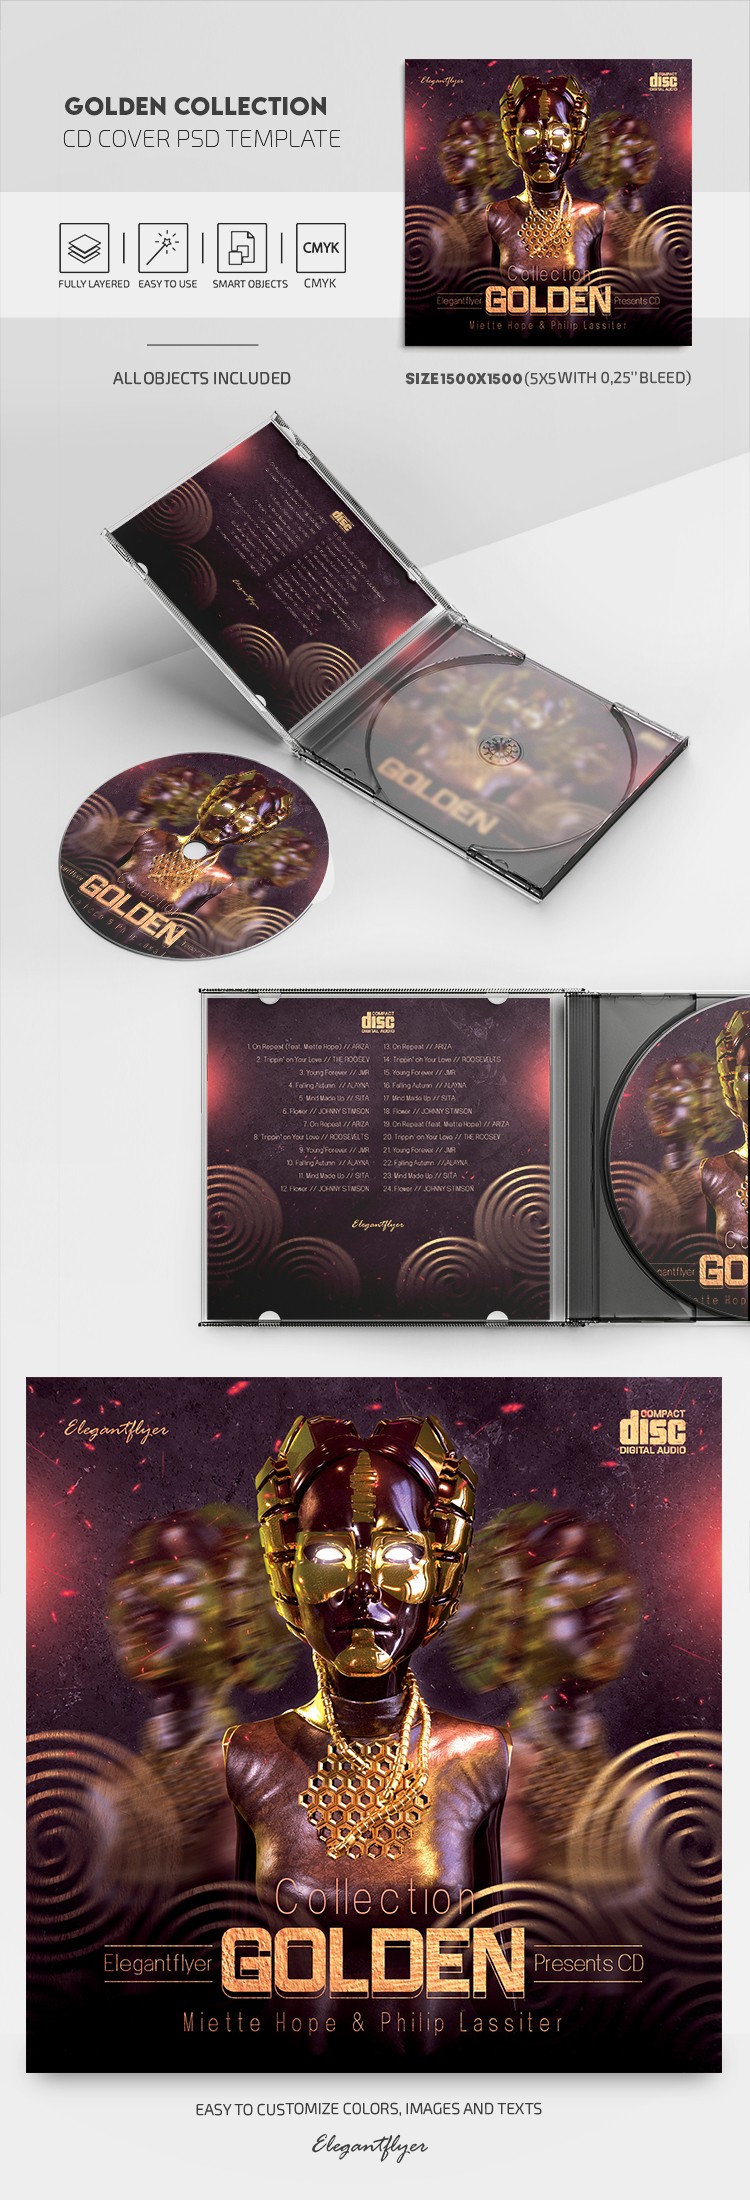 Goldene Sammlung CD Cover by ElegantFlyer